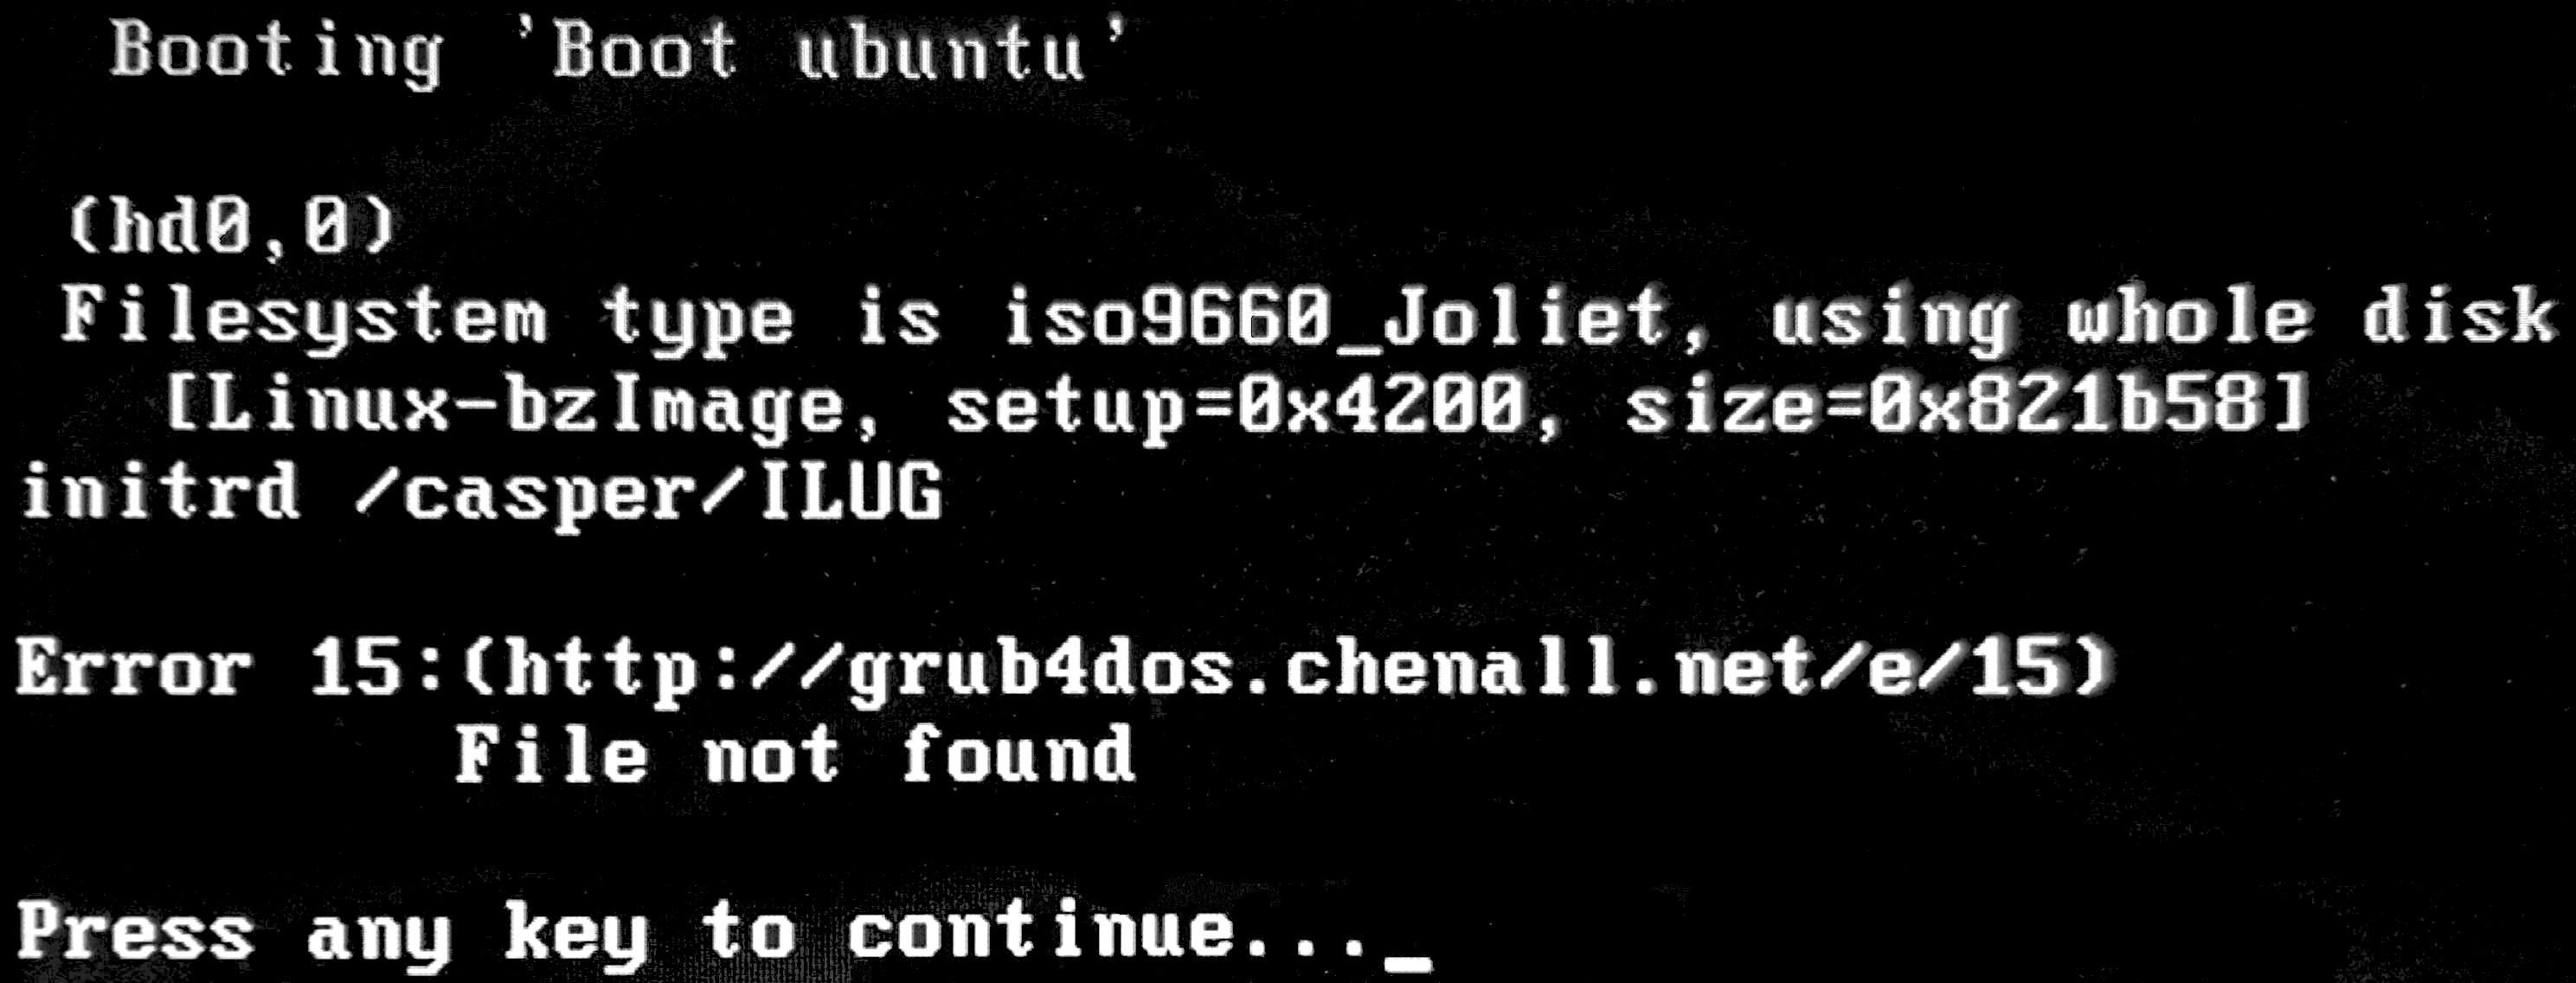 grub 15 errore linux